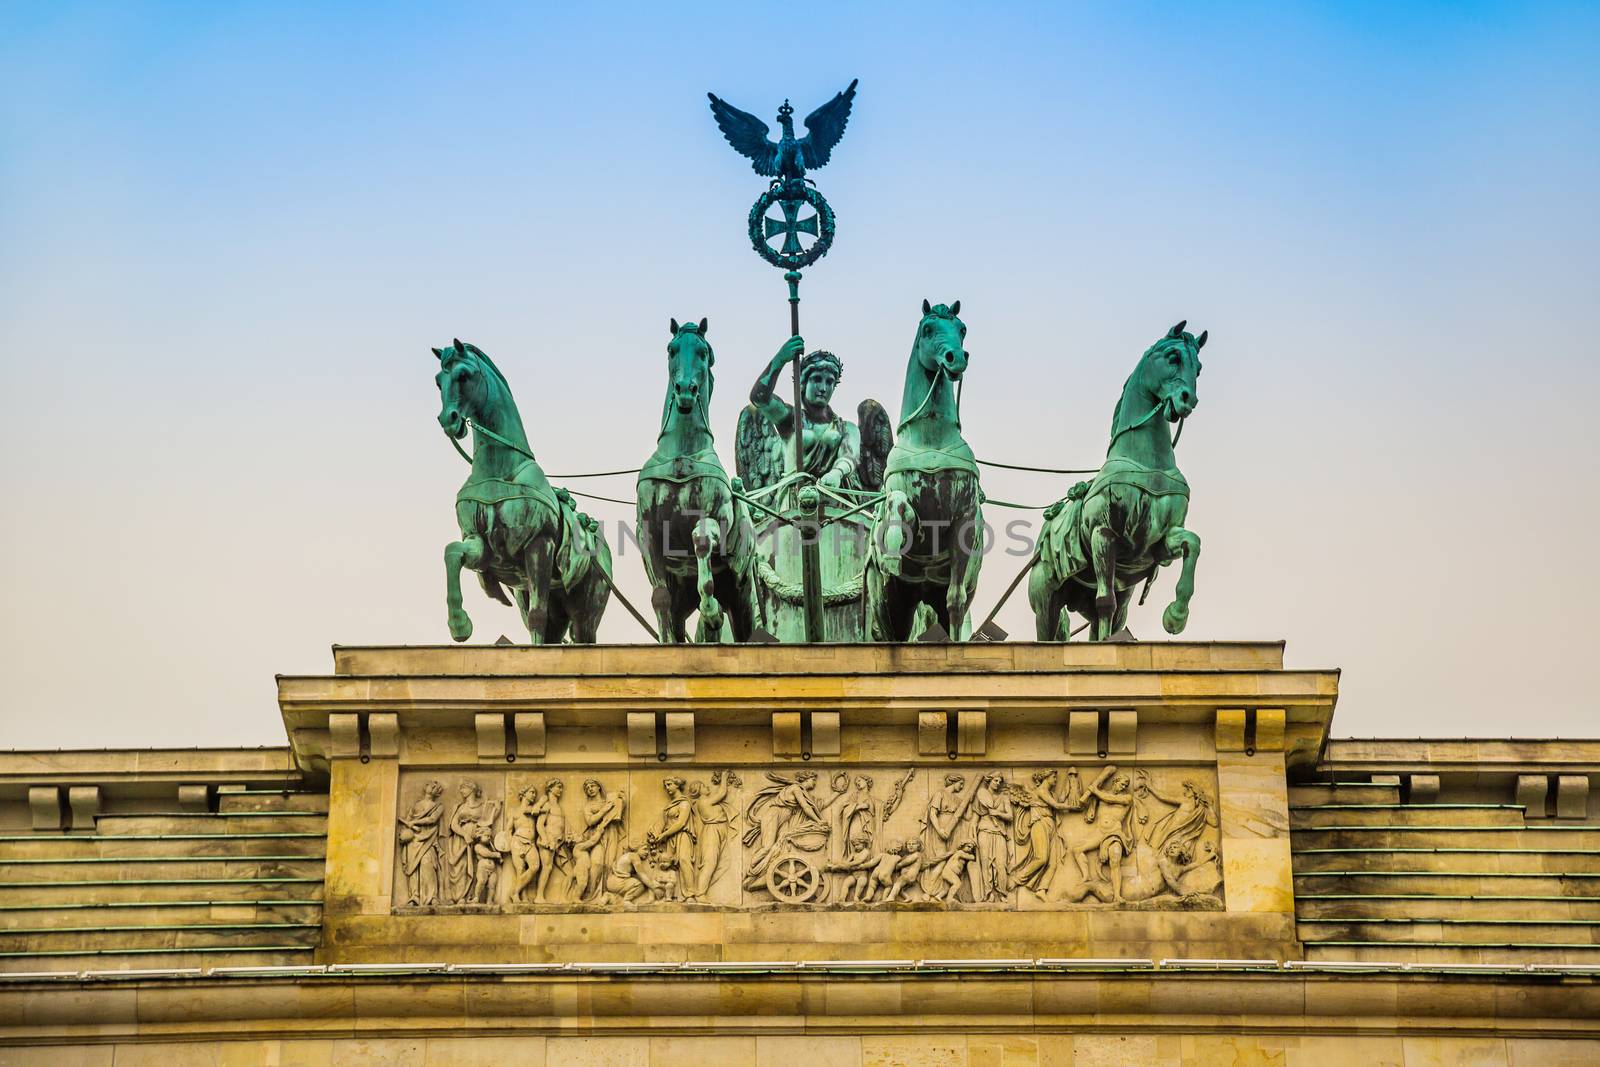 Brandenburg Gate in Berlin - Germany by bloodua